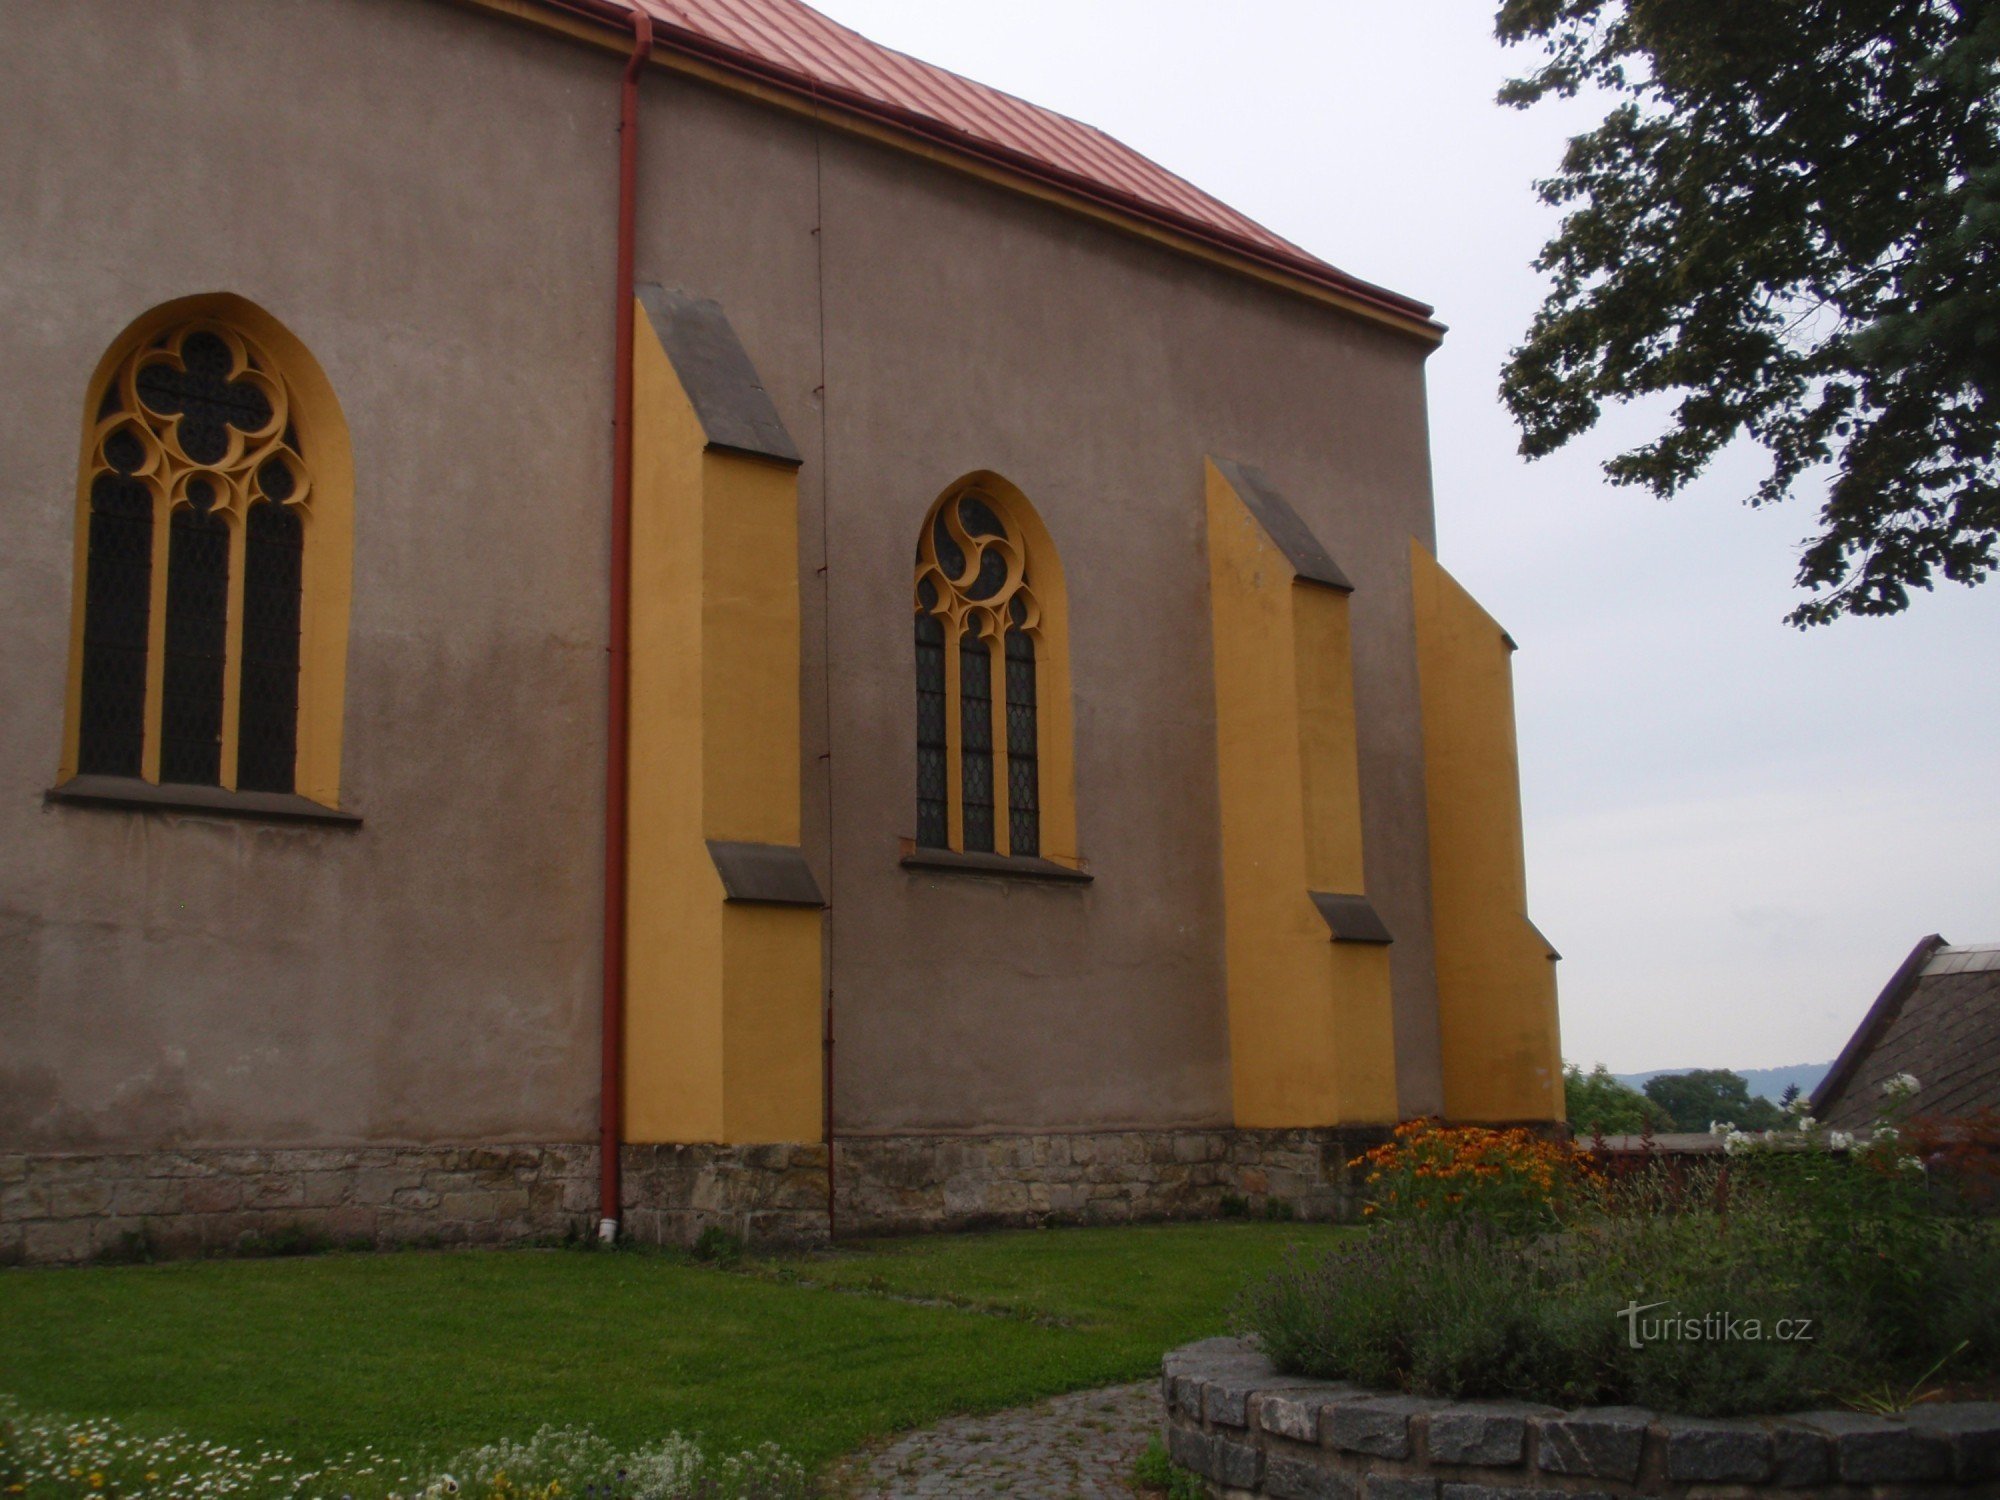 Kyrkliga monument i staden Chotěboře